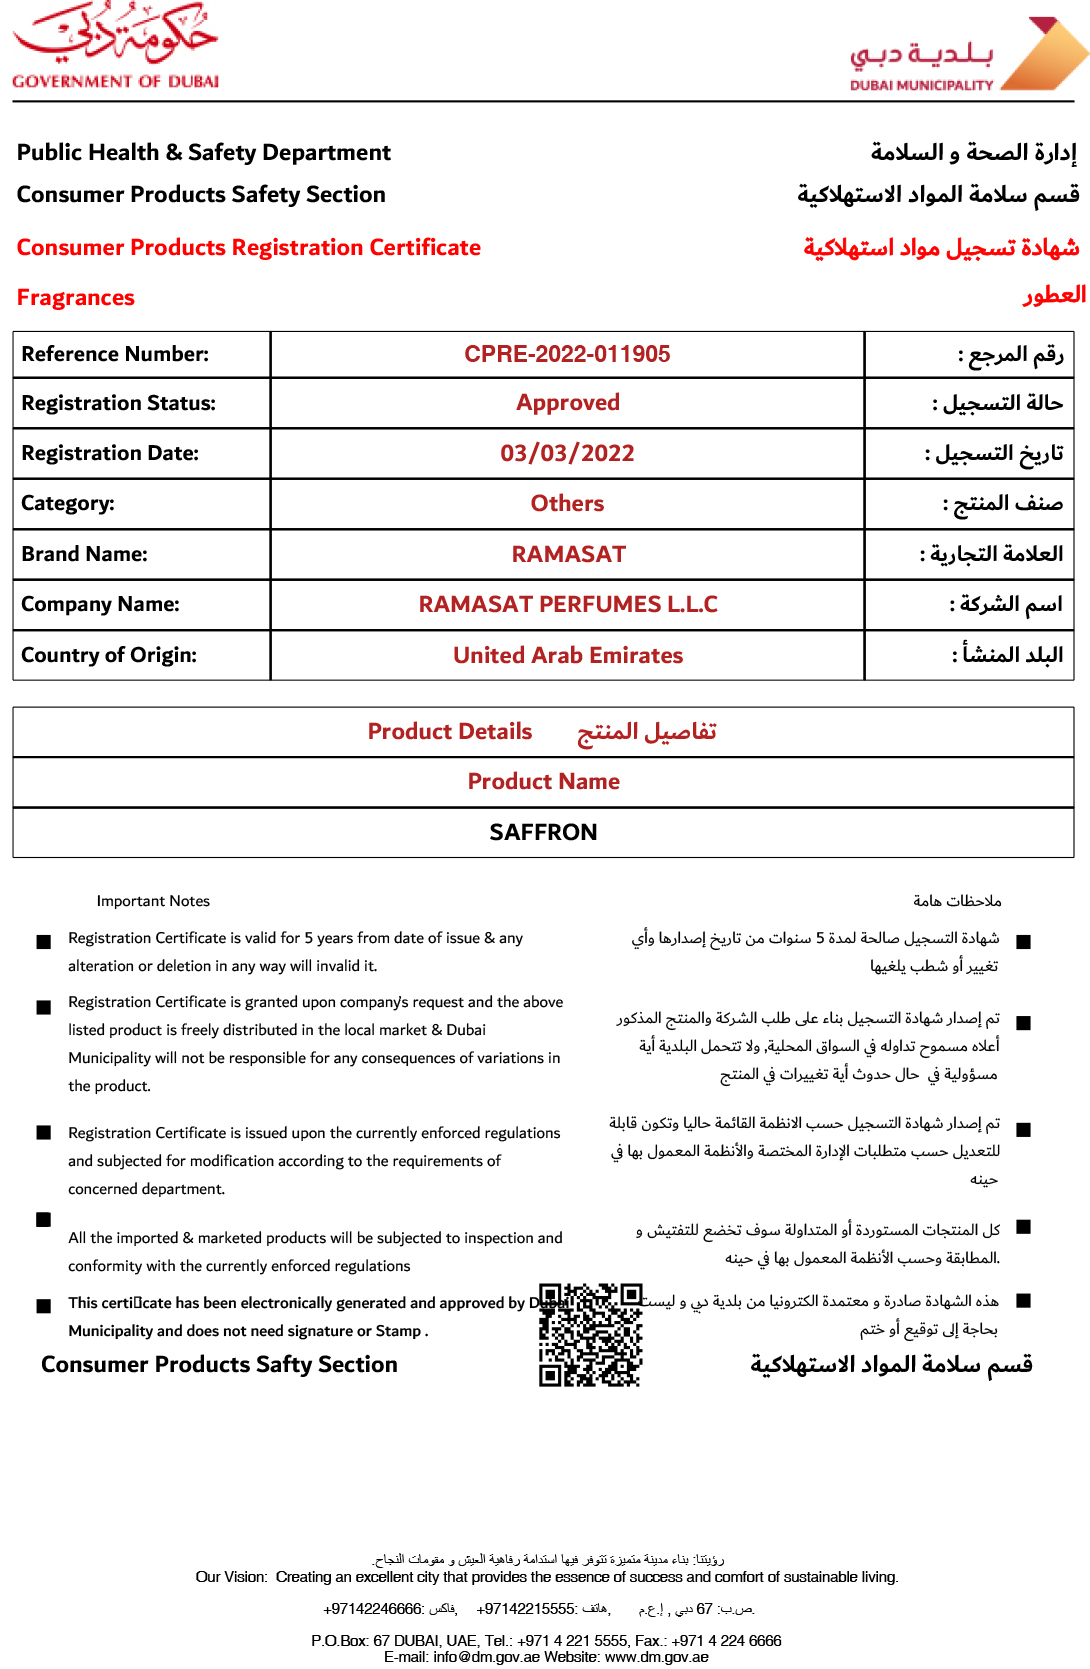 زعفران - مجموعة عطر الجسم بلمسة حريرية - أفضل معطر جسم فاخر في الإمارات العربية المتحدة - رمسات